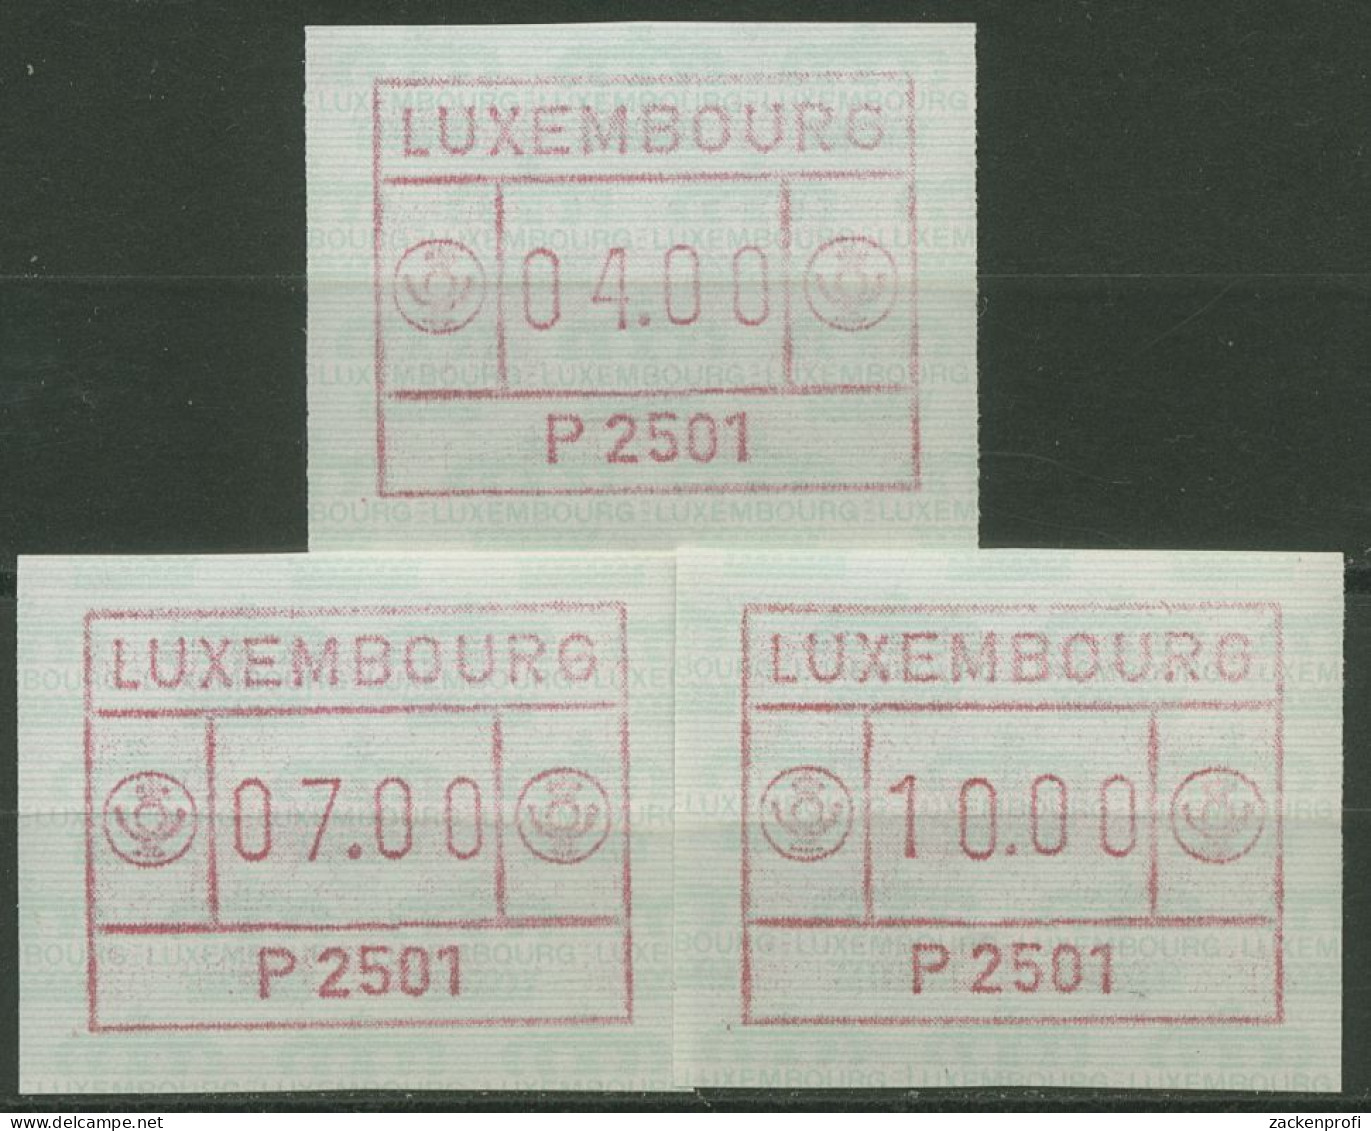 Luxemburg 1983 Automatenmarke Automat P 2501 Satz 1.1.1 B S1 Postfrisch - Frankeervignetten